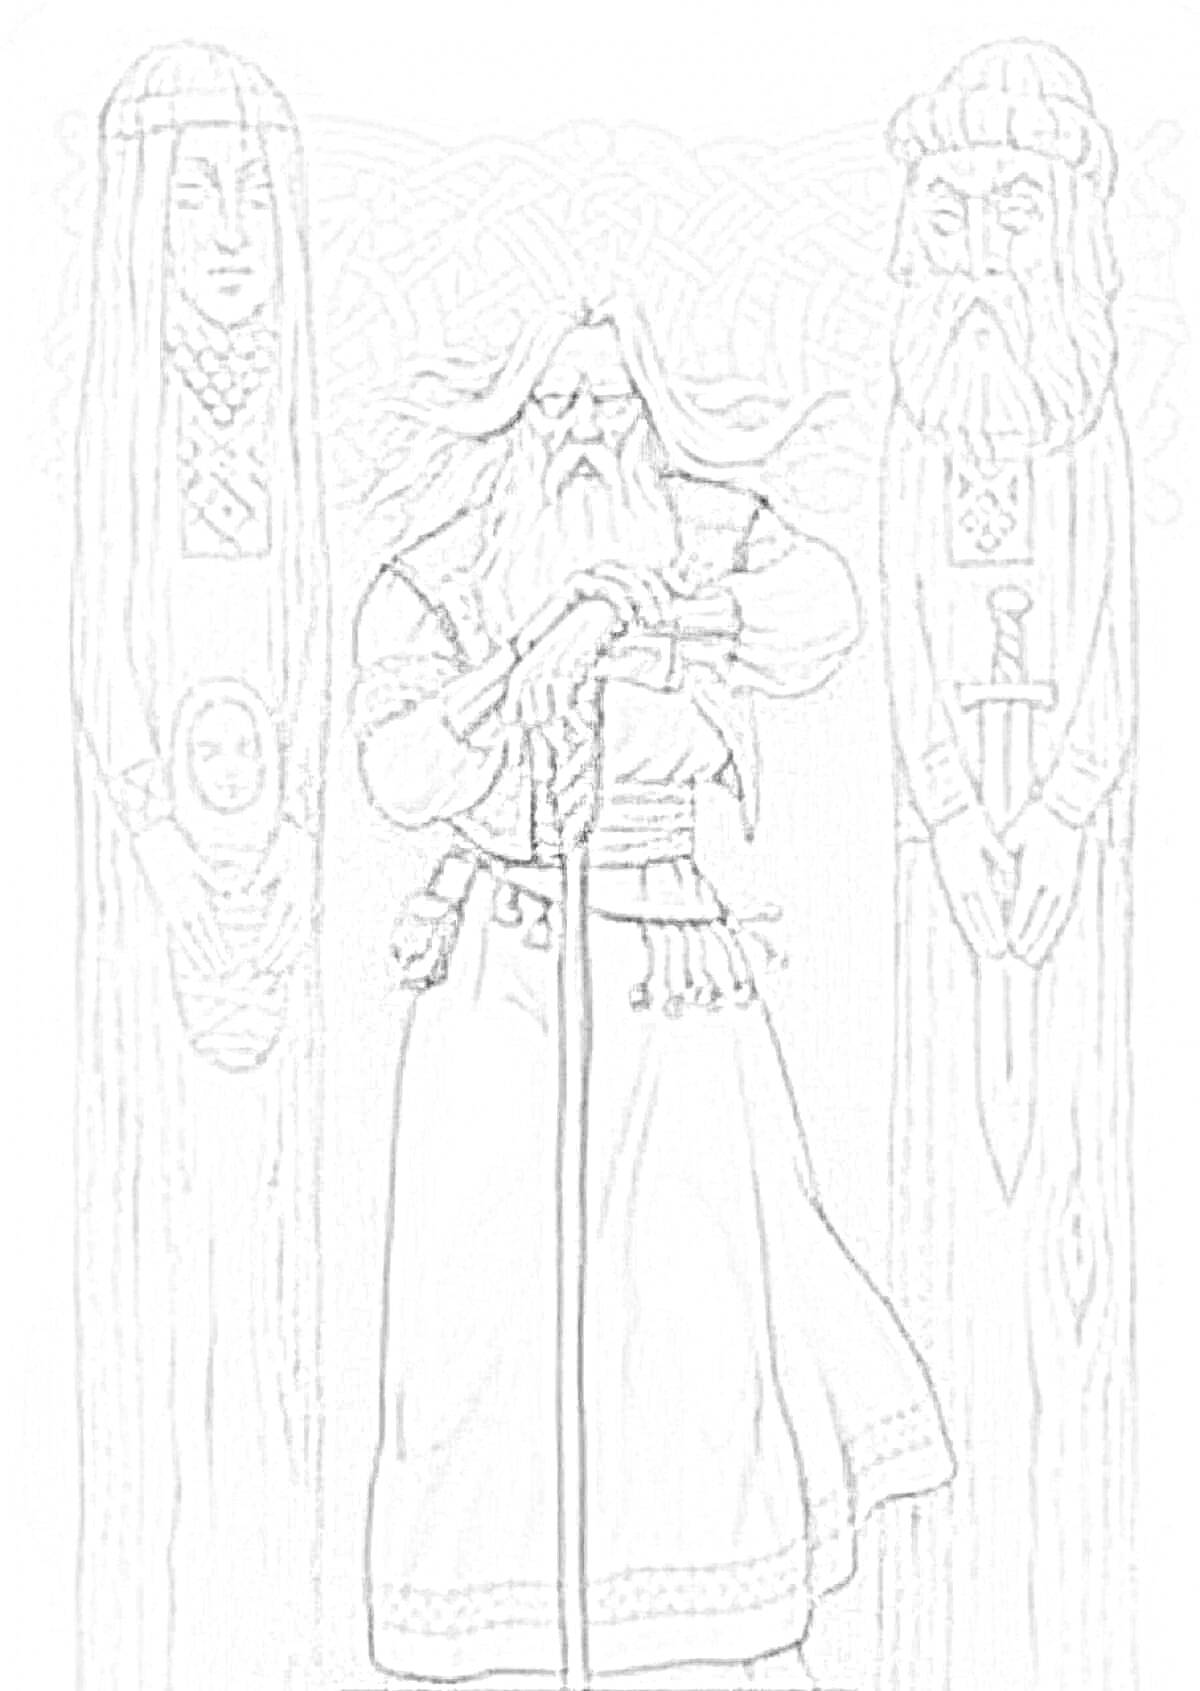 Раскраска Славянские боги с идолами, мужчина с длинной бородой в традиционных одеждах, деревянные идолы по бокам